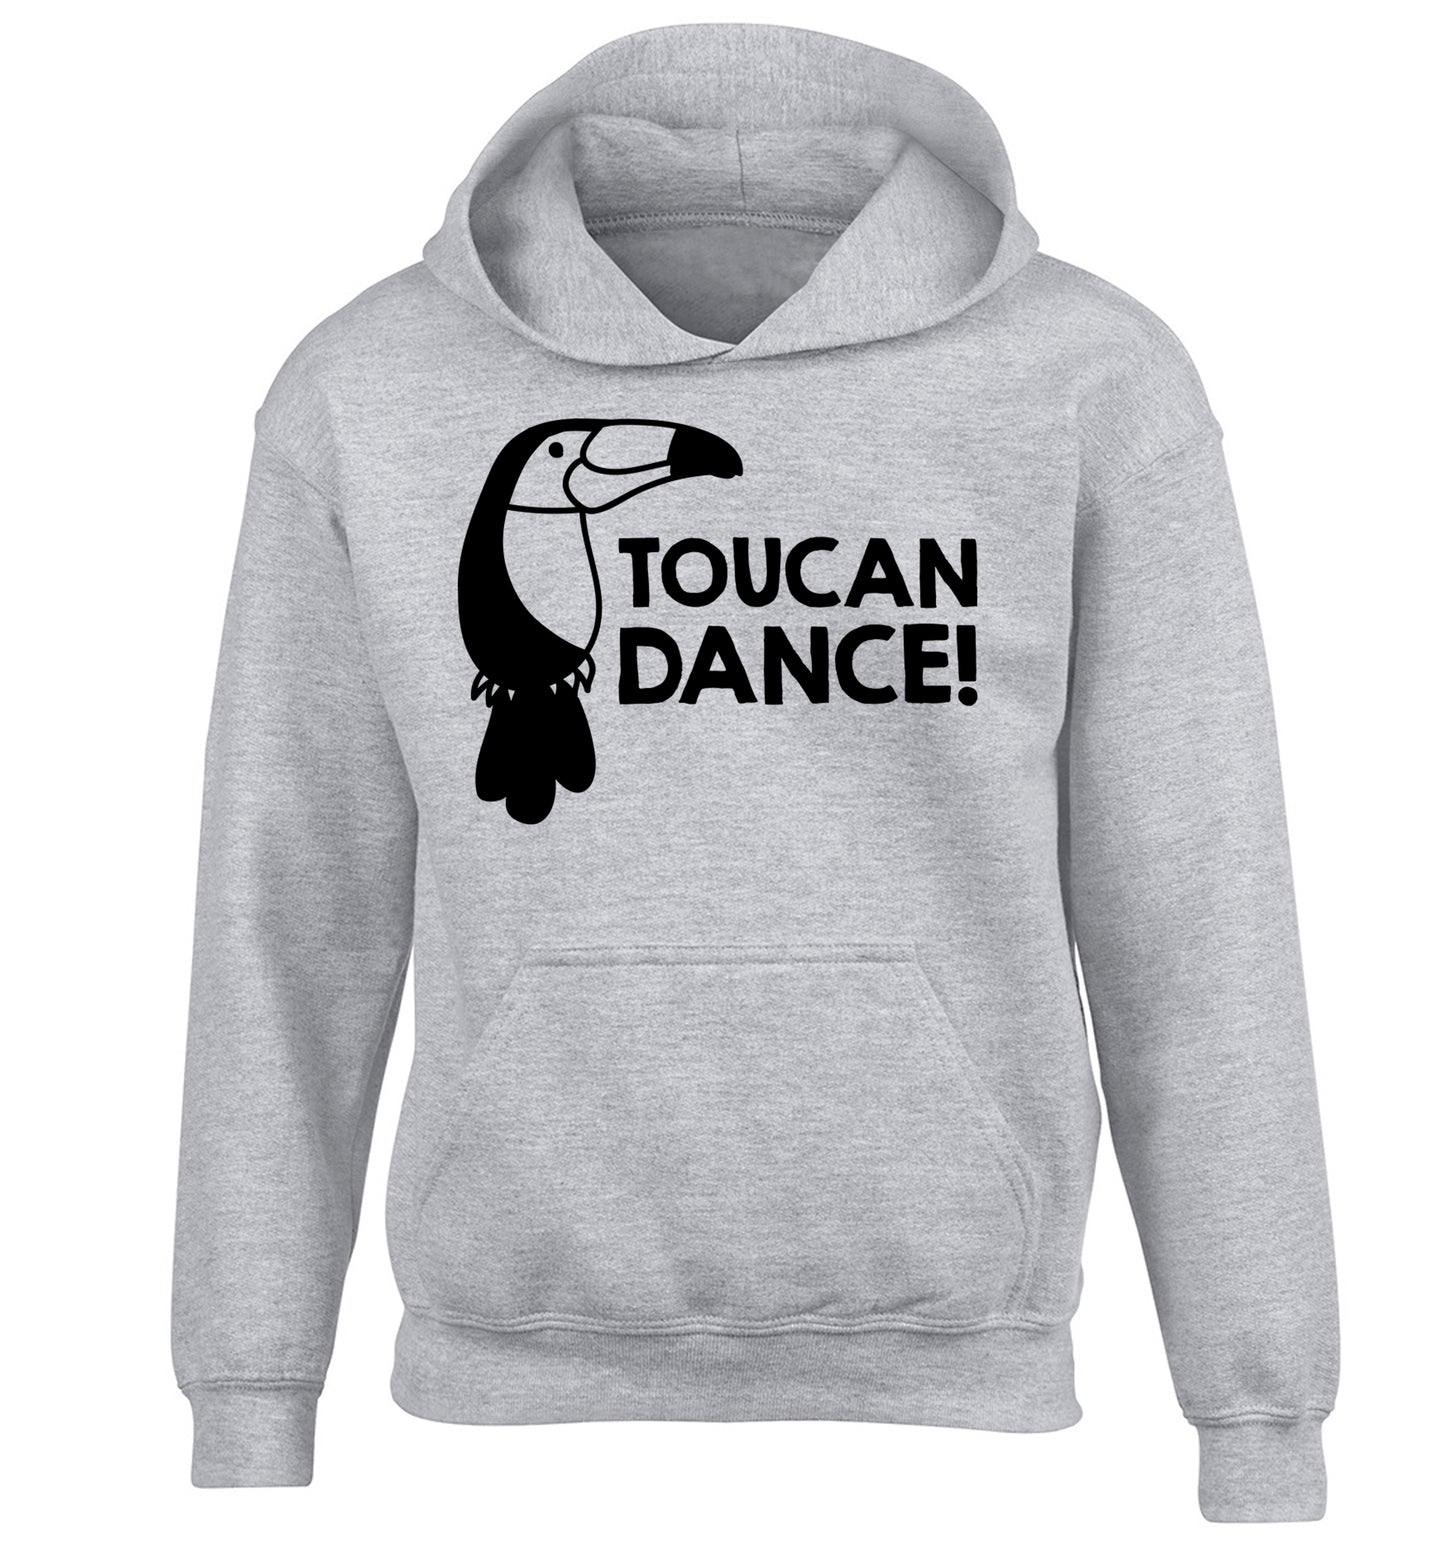 Toucan dance children's grey hoodie 12-13 Years